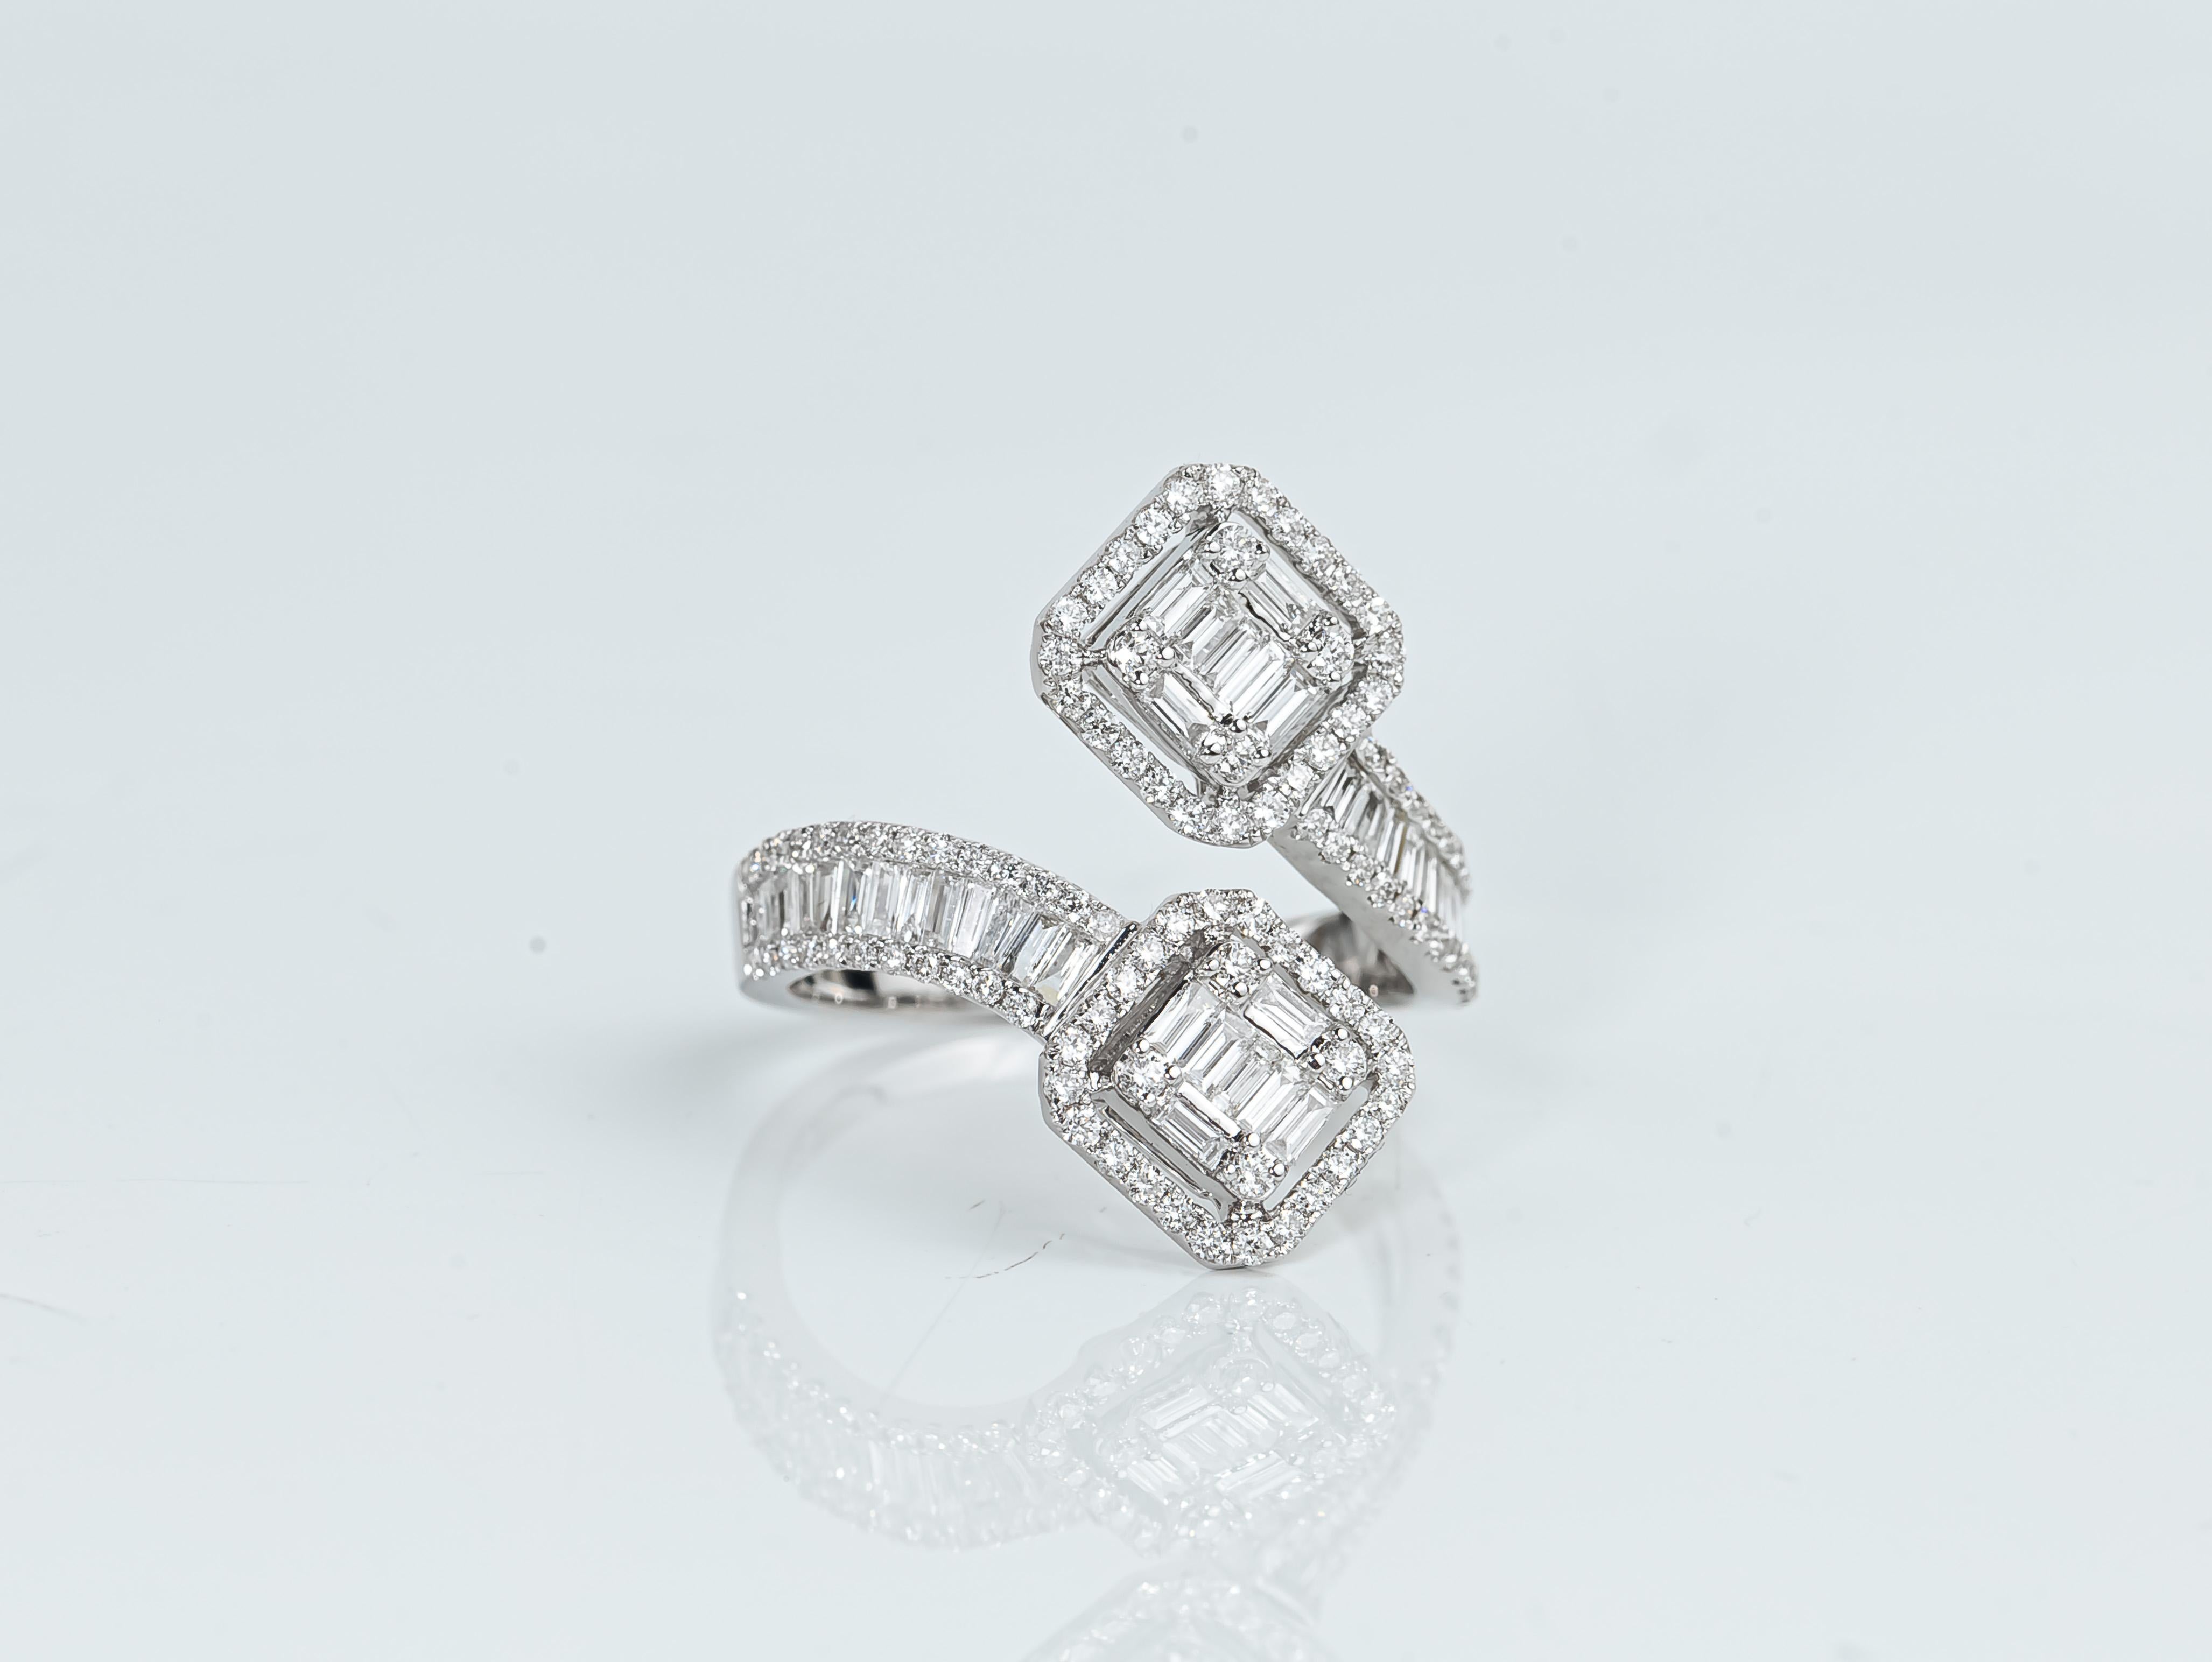 Art Deco Diamant Baguetteschliff Ring Illusion Einstellung, 1,6TCW Einzigartige Diamant Oval Form Ring, Aussage Ring, Jahrestag beliebte Ringe


Erhältlich in 18 Karat Weißgold.

Das gleiche Design kann auch mit anderen Edelsteinen auf Anfrage